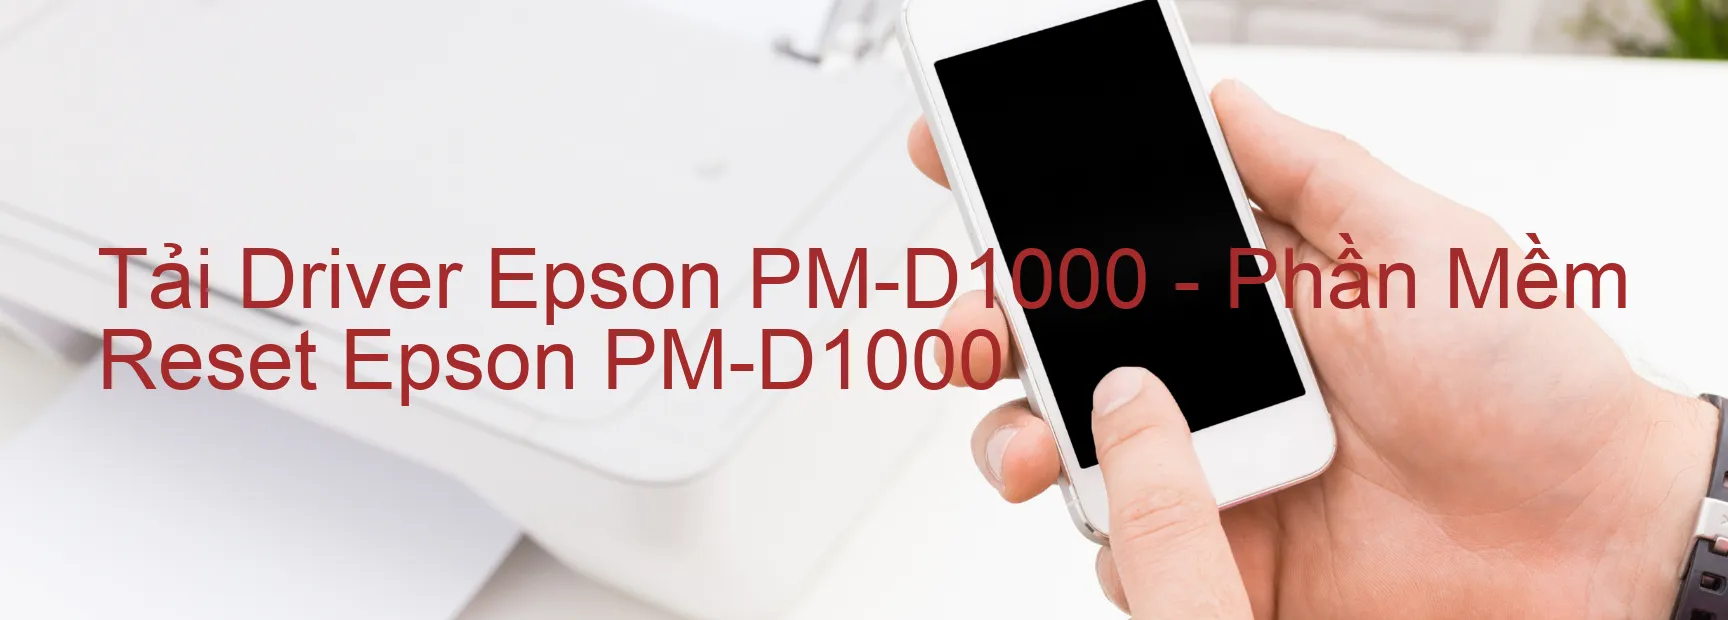 Driver Epson PM-D1000, Phần Mềm Reset Epson PM-D1000